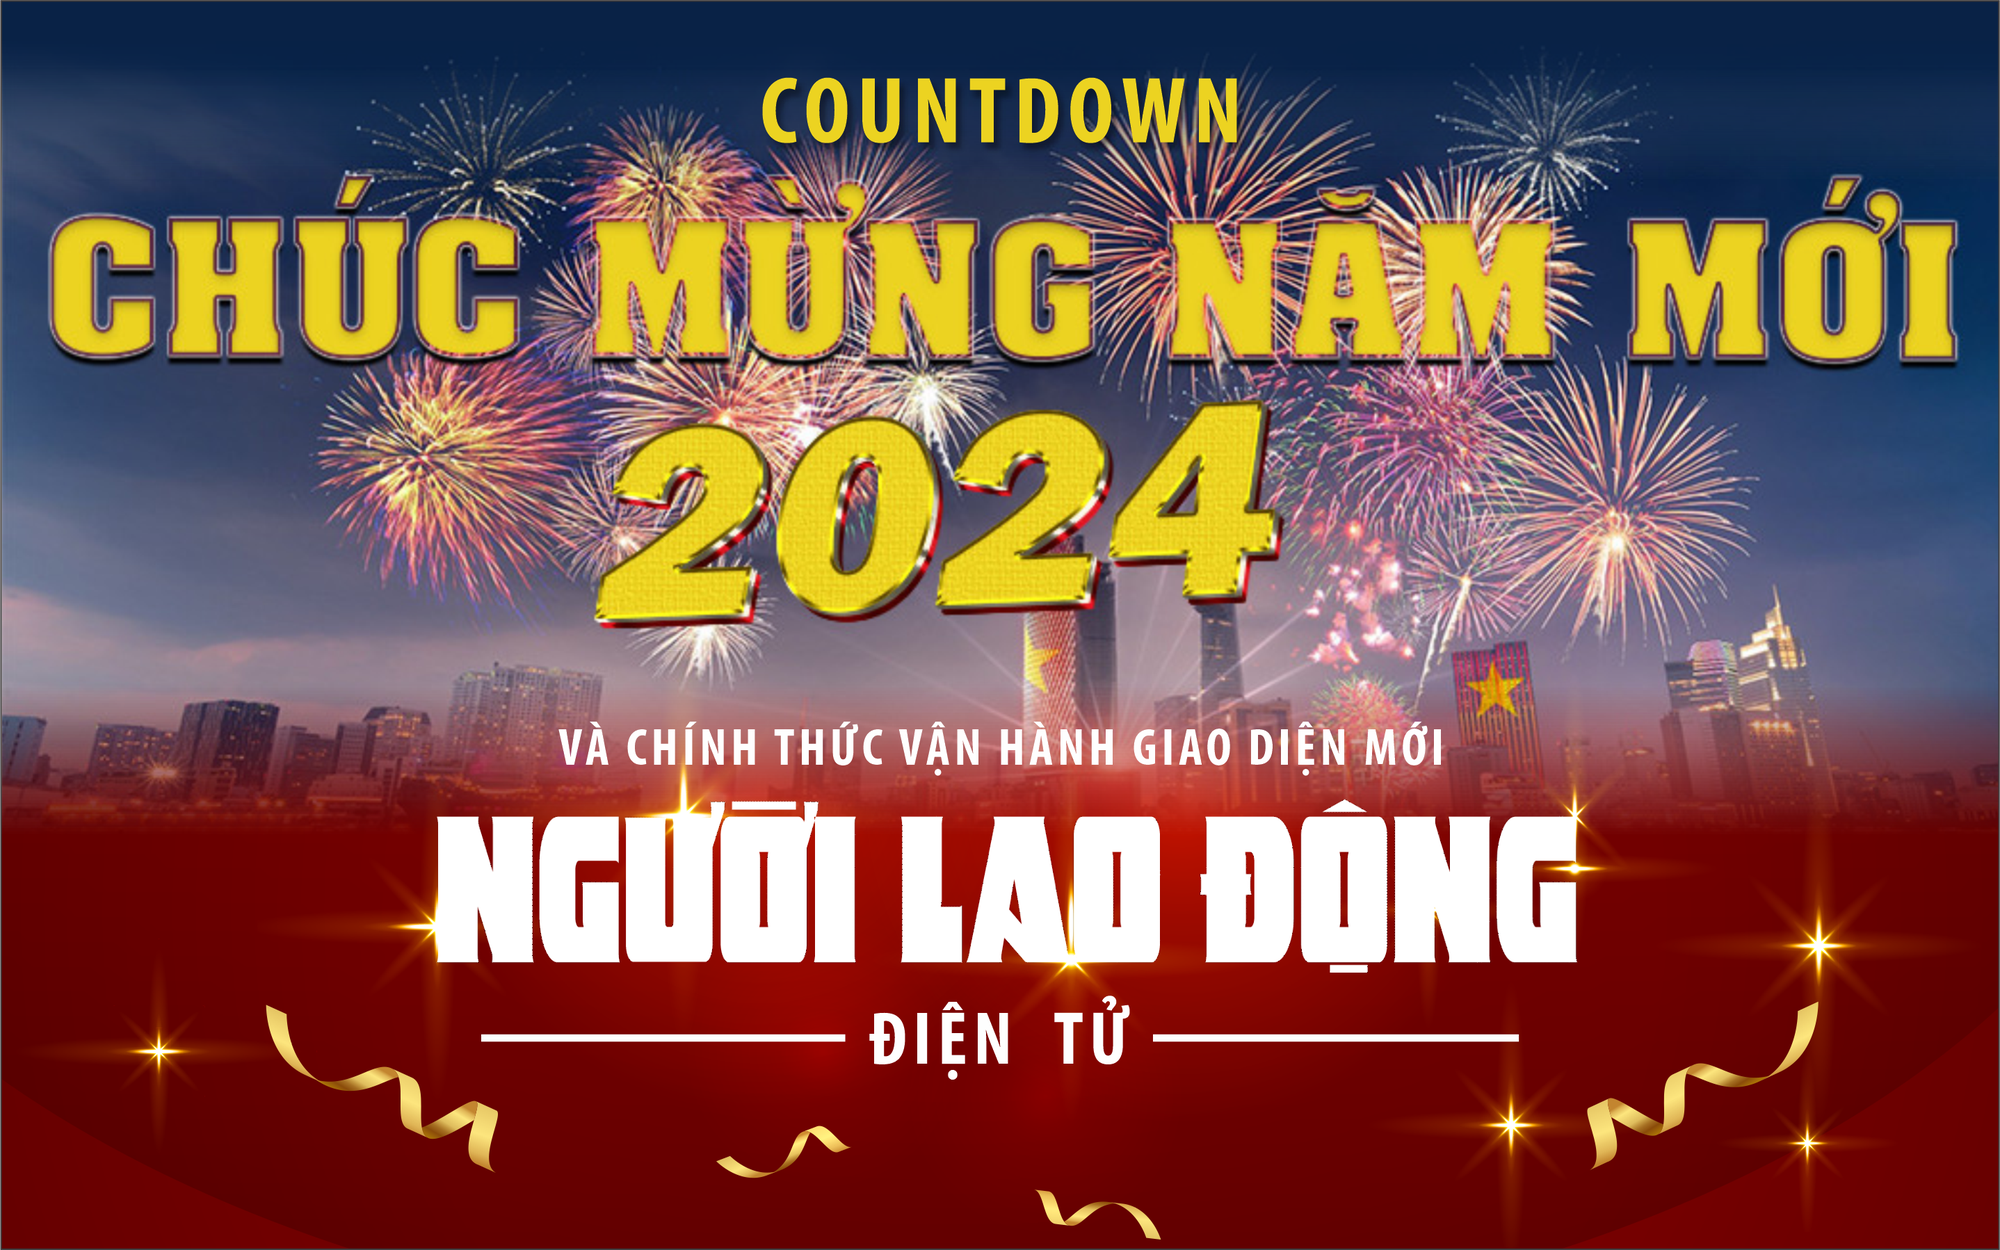 Đếm ngược chào năm mới 2024 và chính thức vận hành giao diện mới Người Lao Động điện tử